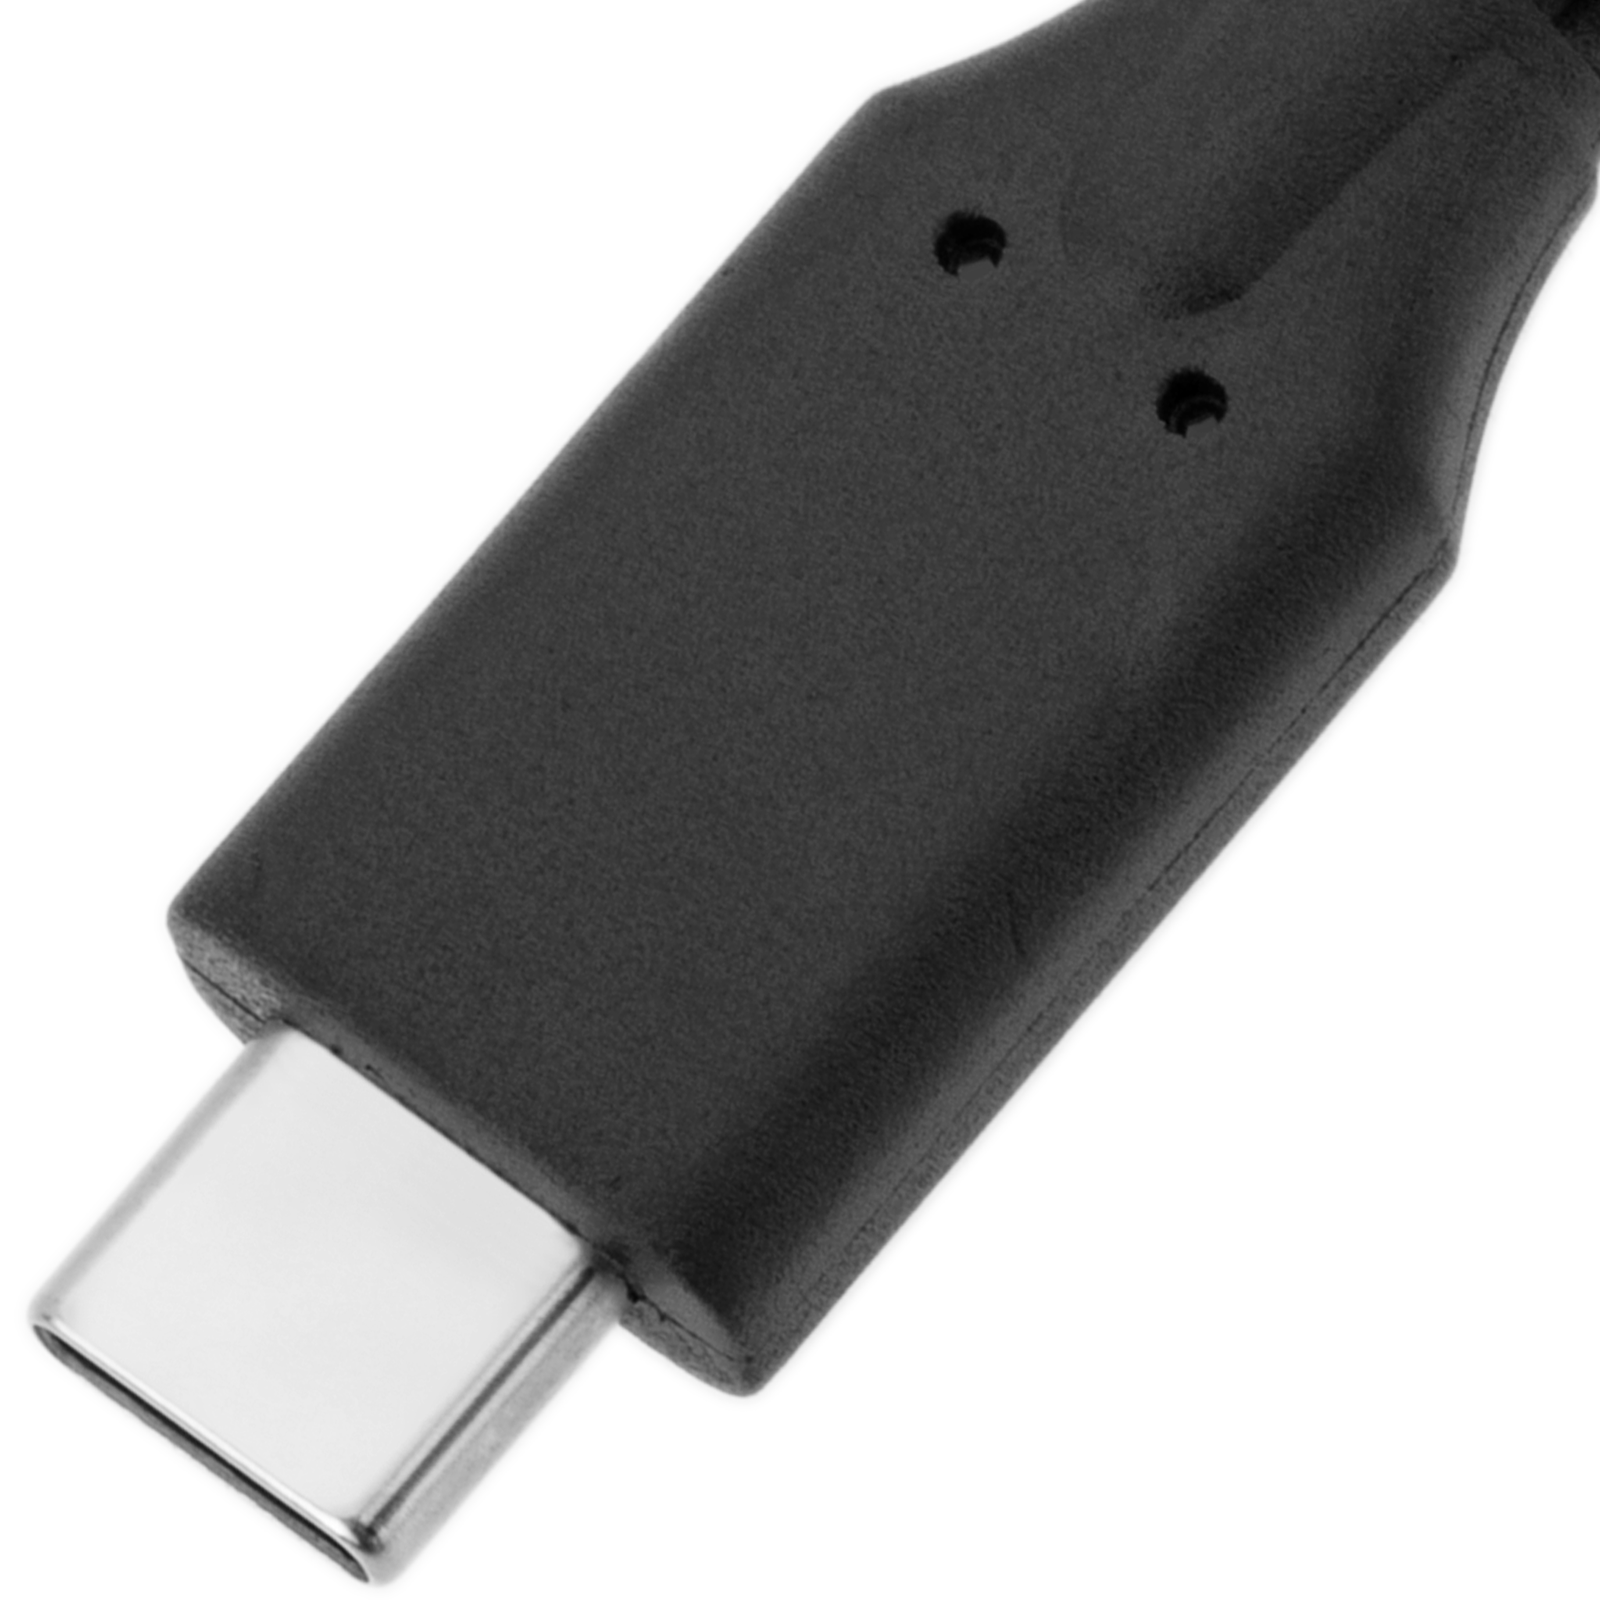 Cable USB 3.2 Gen 2x2 20 Gb/s 50 cm con conectores USB 3.1 Gen 1